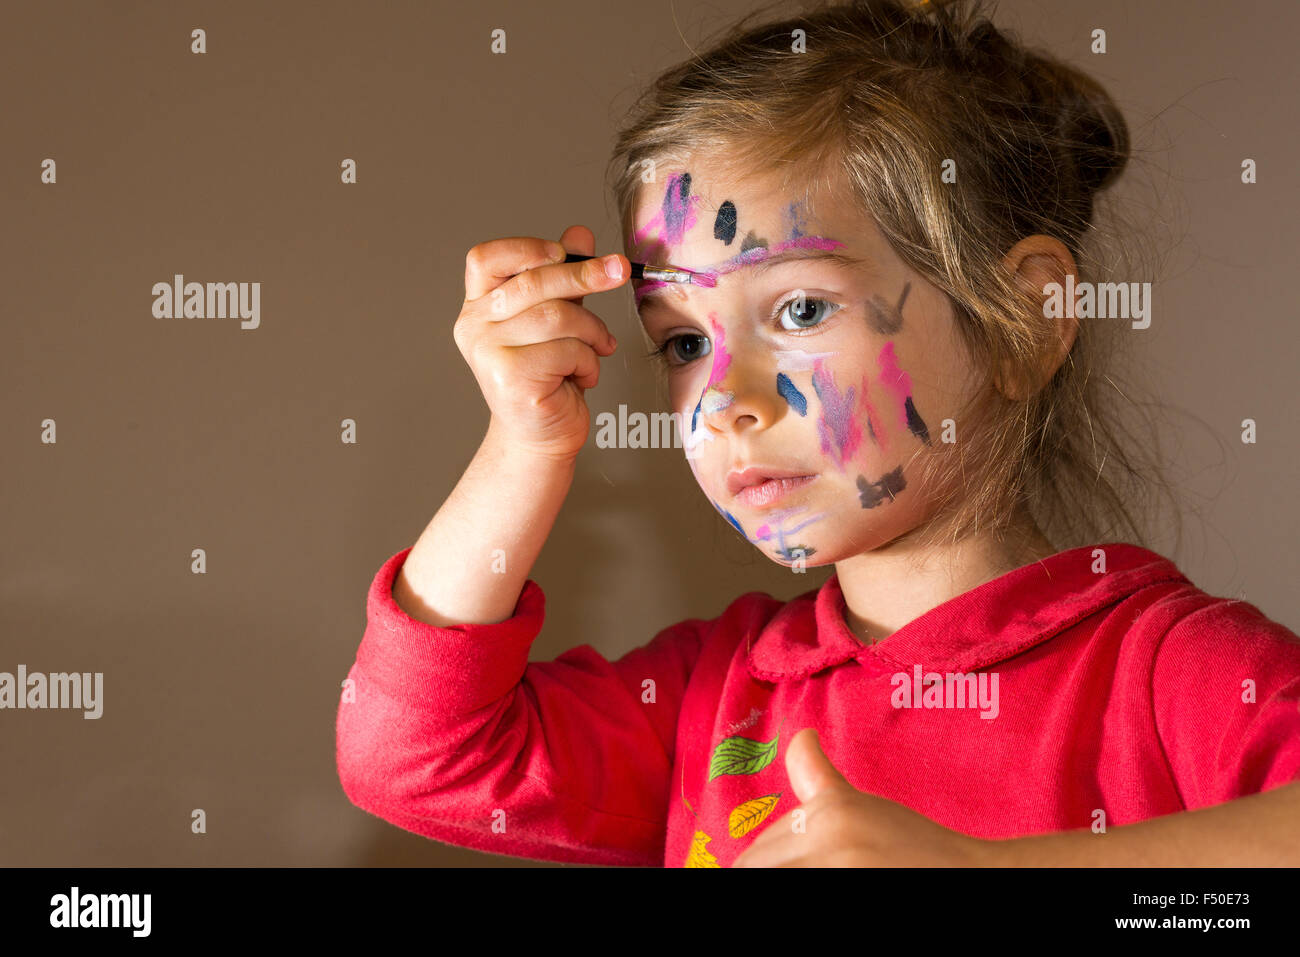 Une petite fille, vêtu d'un chandail rouge, la peinture est son visage aux couleurs aquarelle Banque D'Images